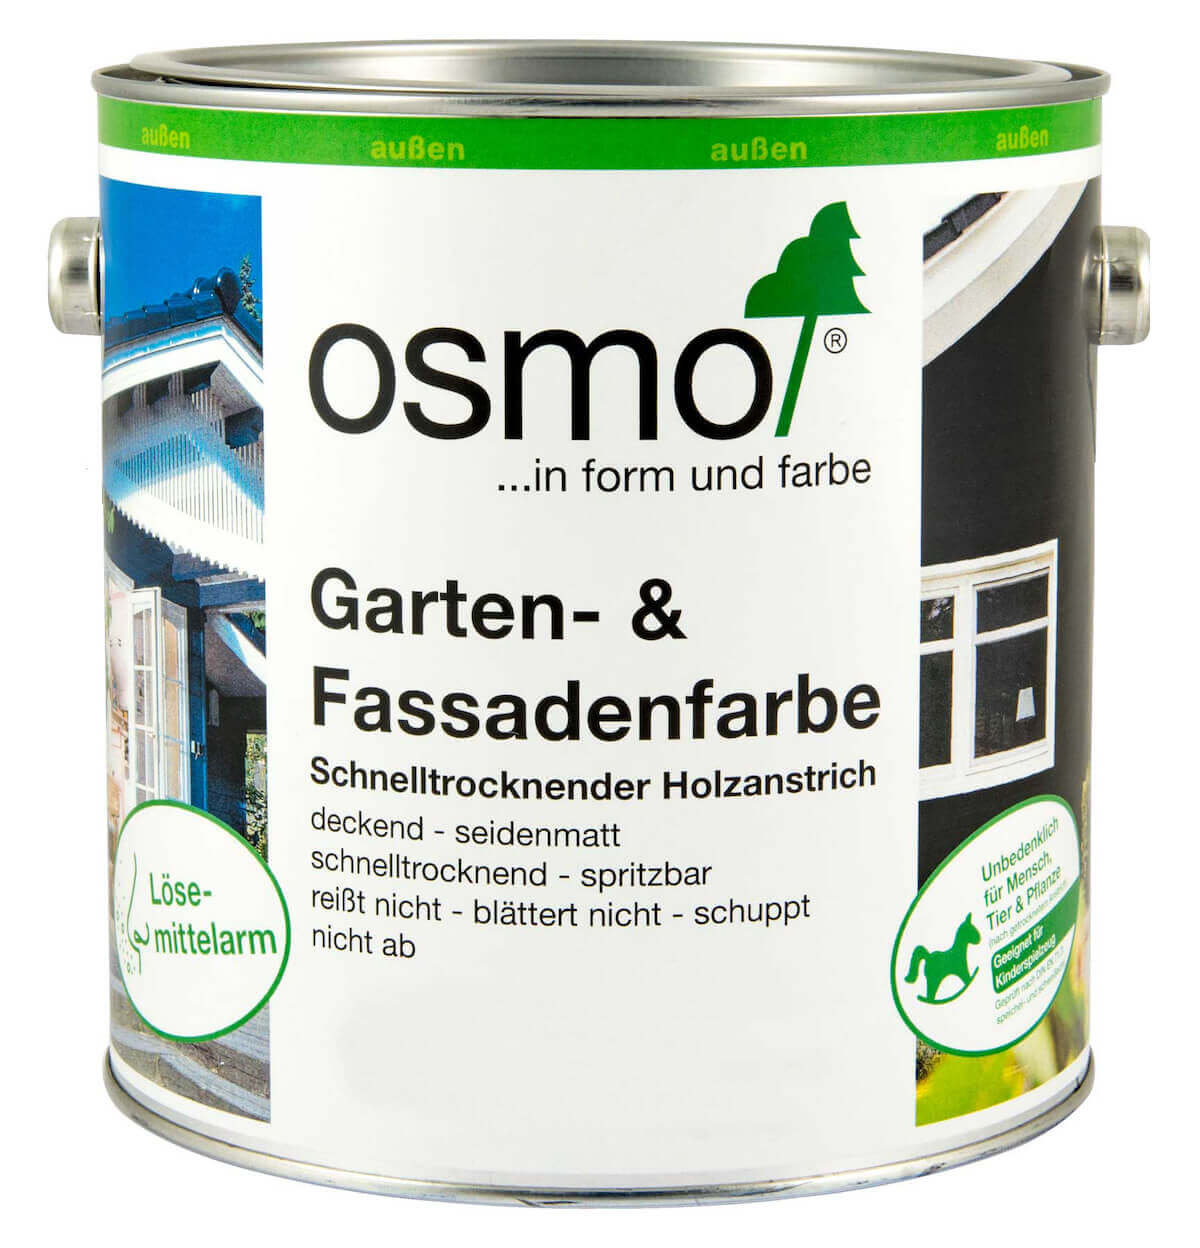 OSMO Garten- & Fassadenfarbe